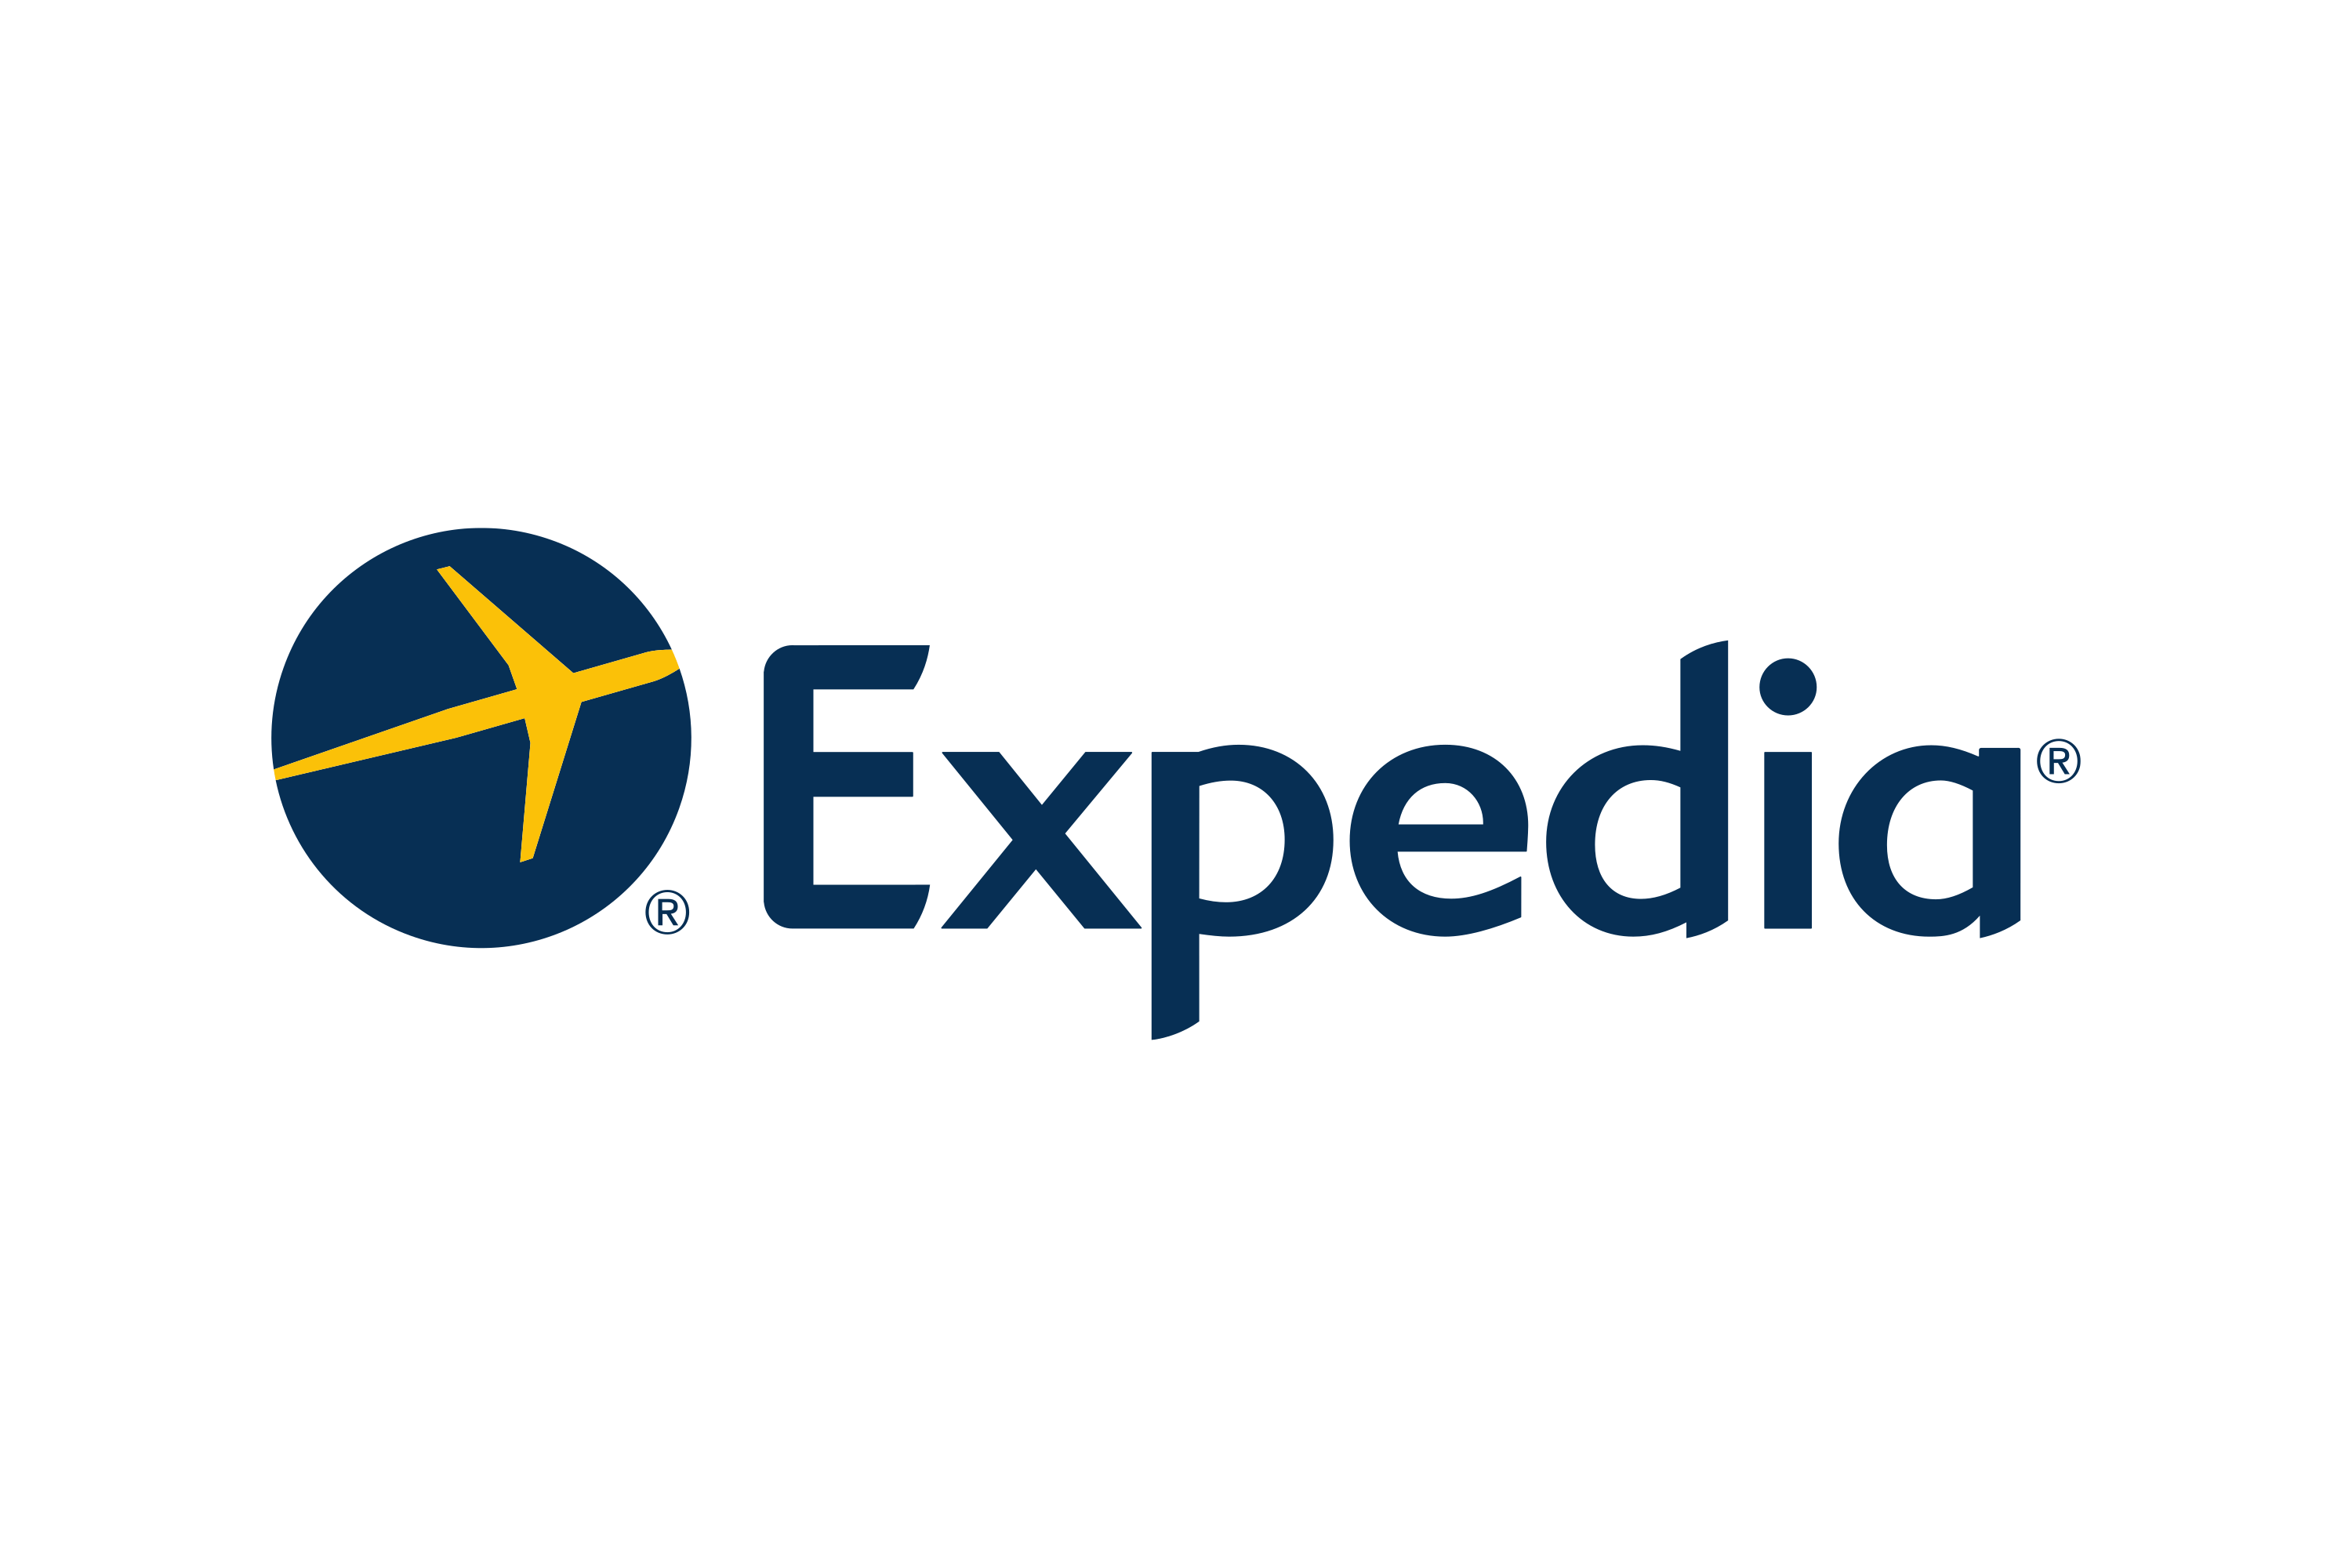 expedia.com Logo